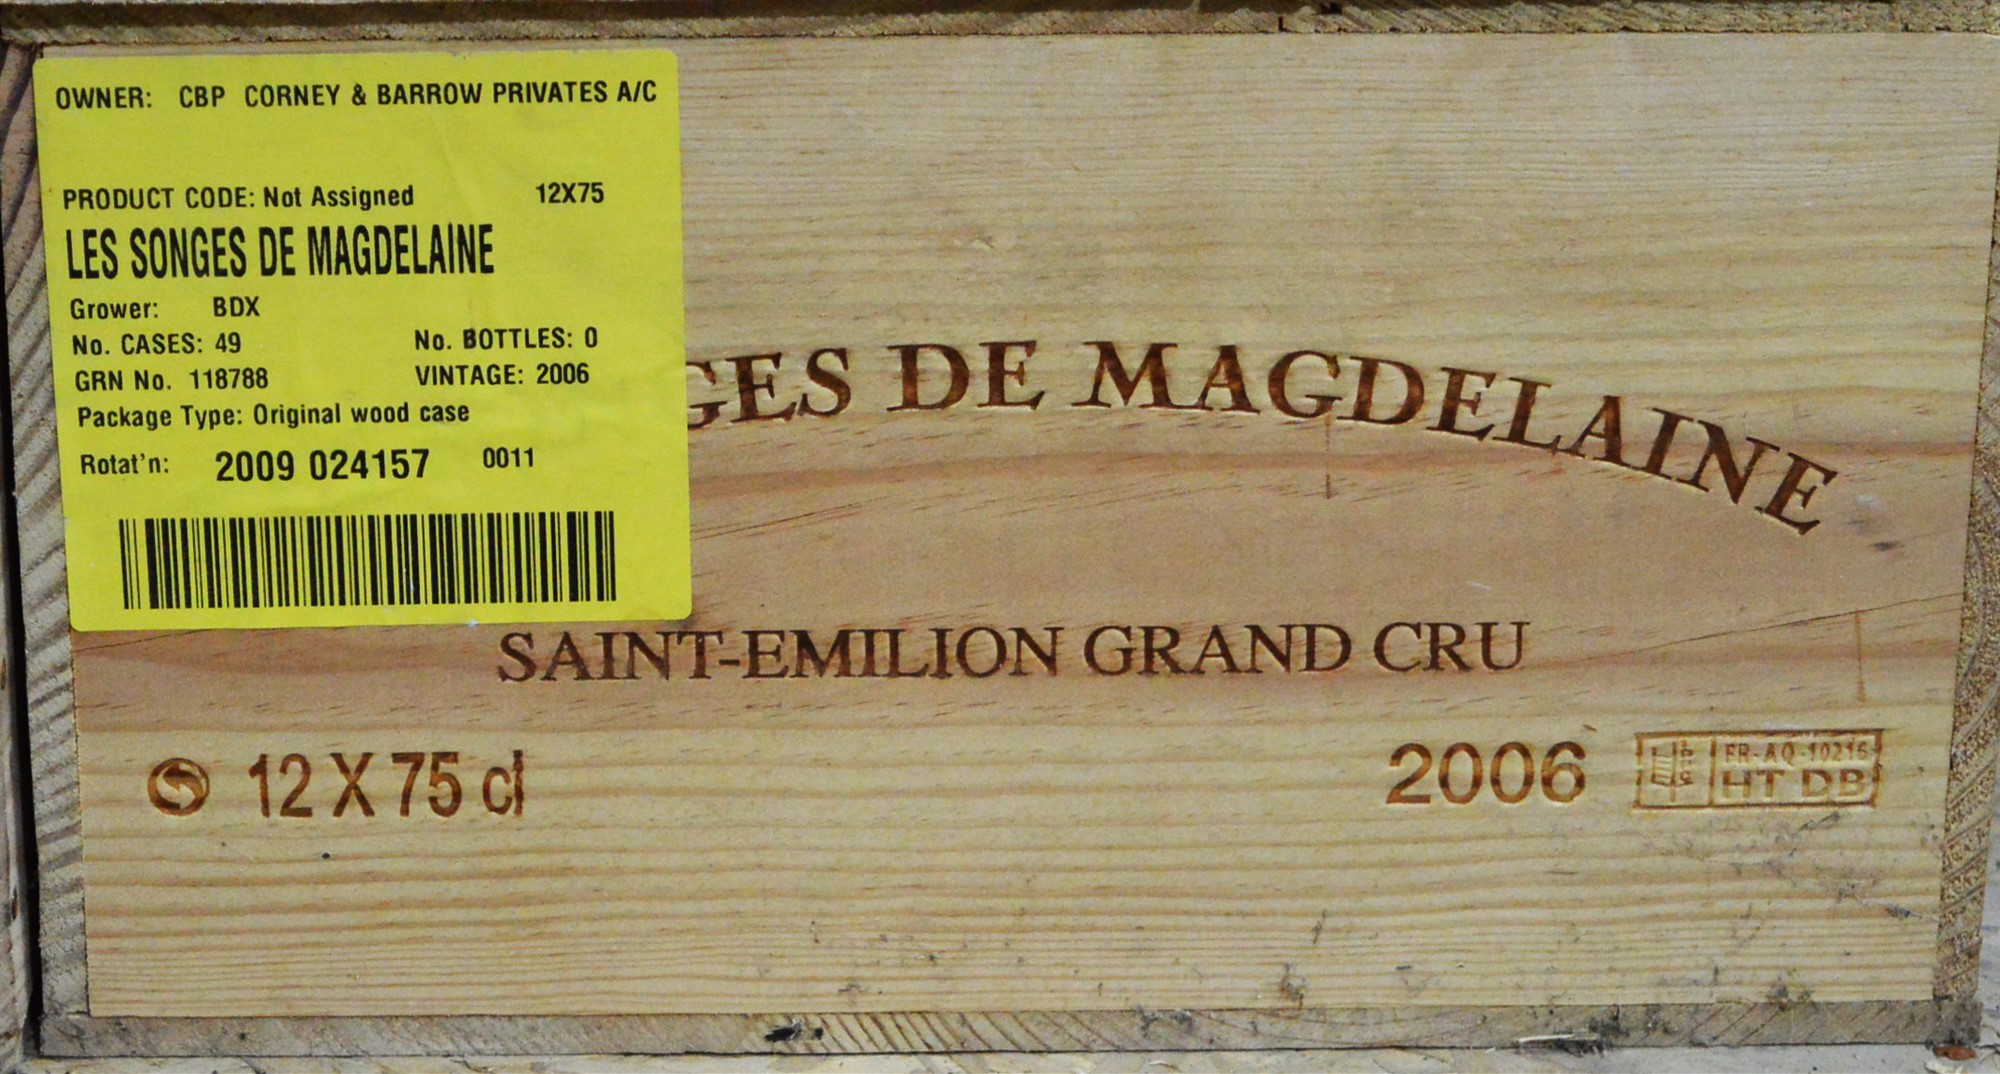 Twelves bottles of Les Songs de Magdelaine.